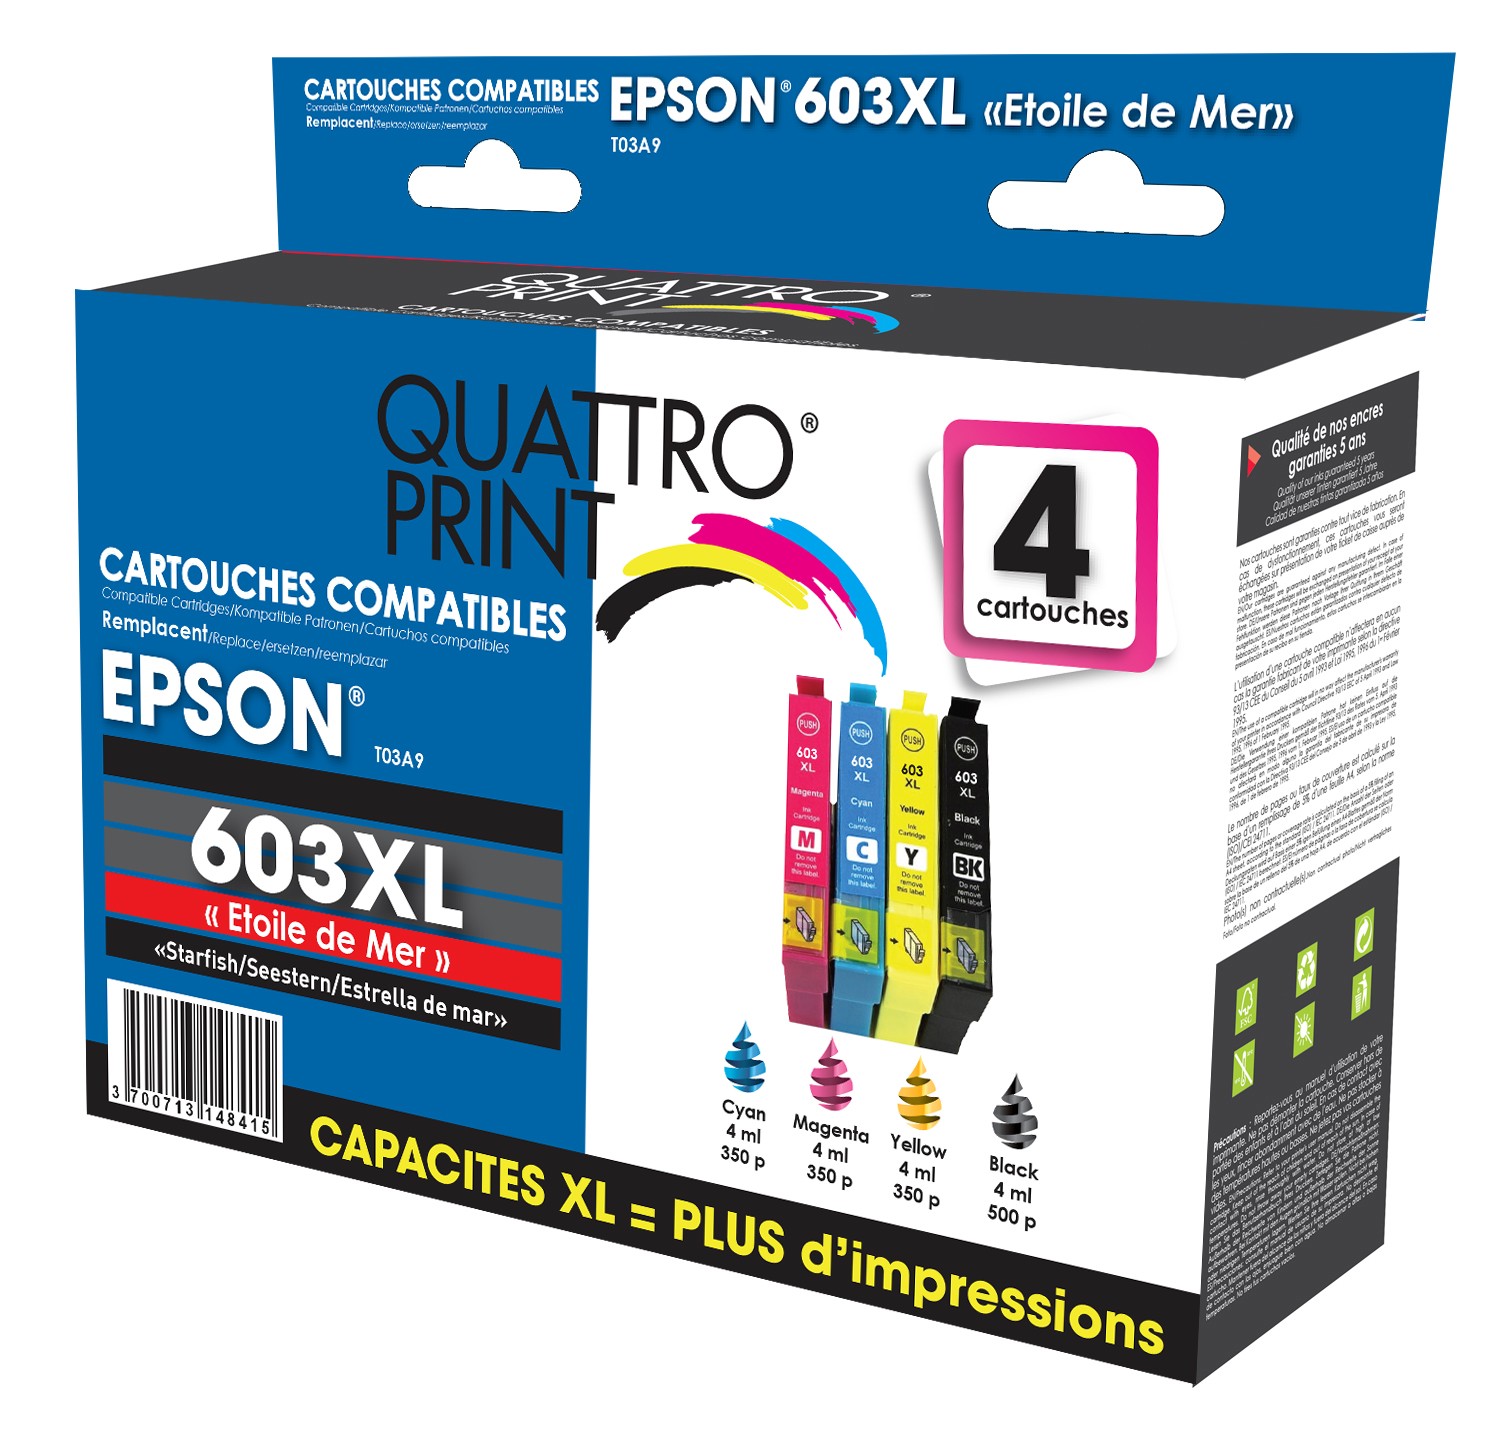 Cartouches EPSON compatibles 603 XL ( série étoile de mer) Pack 4